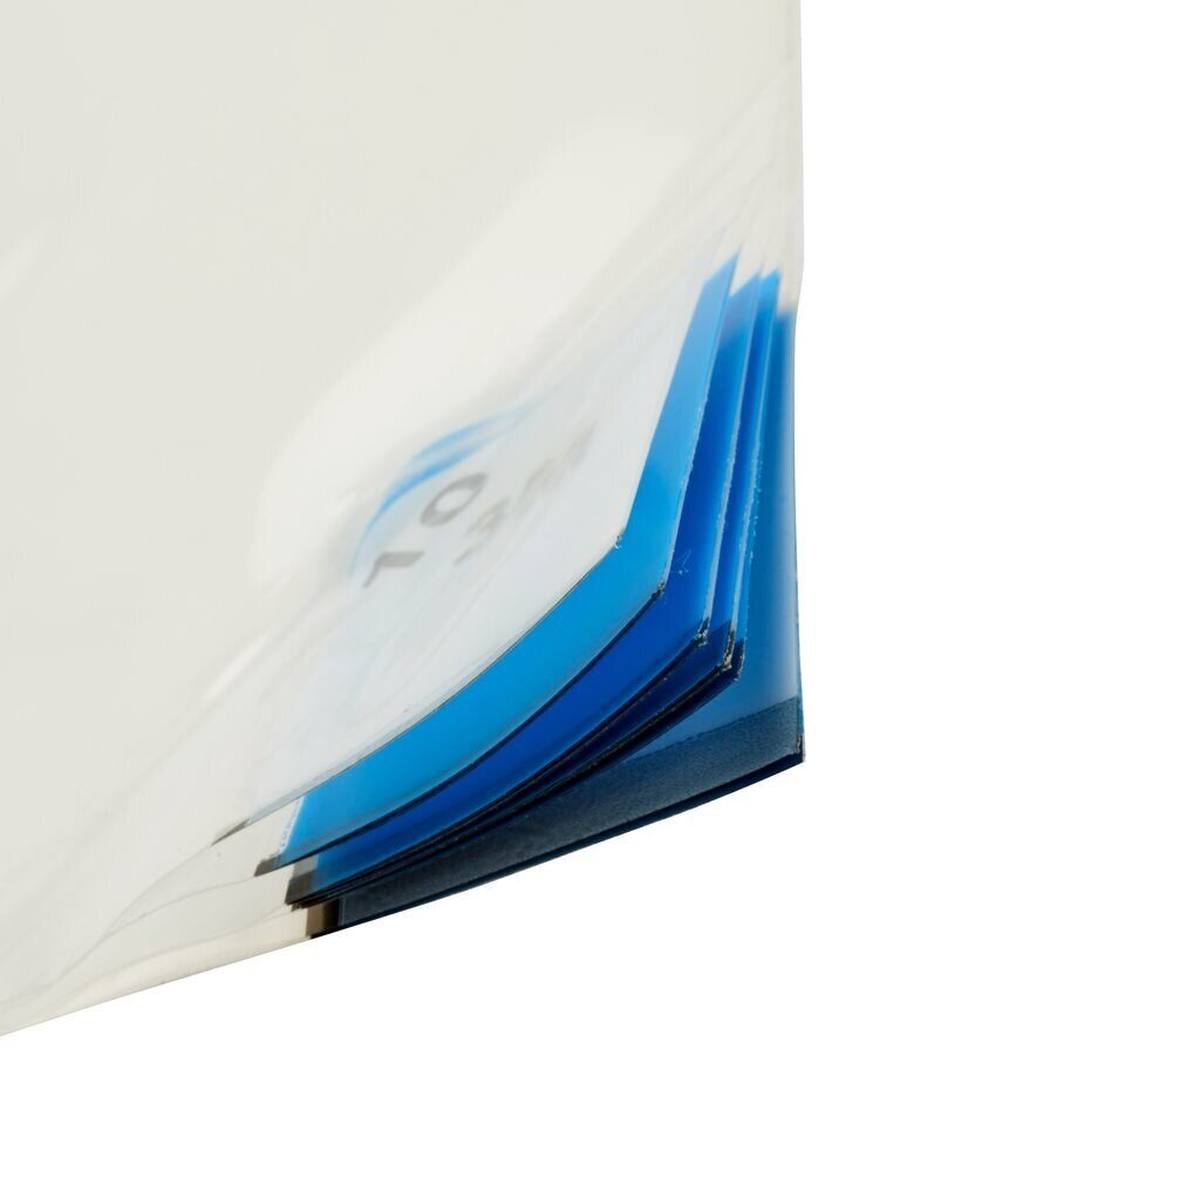 3M 4300 Tapis adhésif pour poussières fines Nomad, blanc, 0,9m x 0,45m, 40pcs couches de polyéthylène transparent